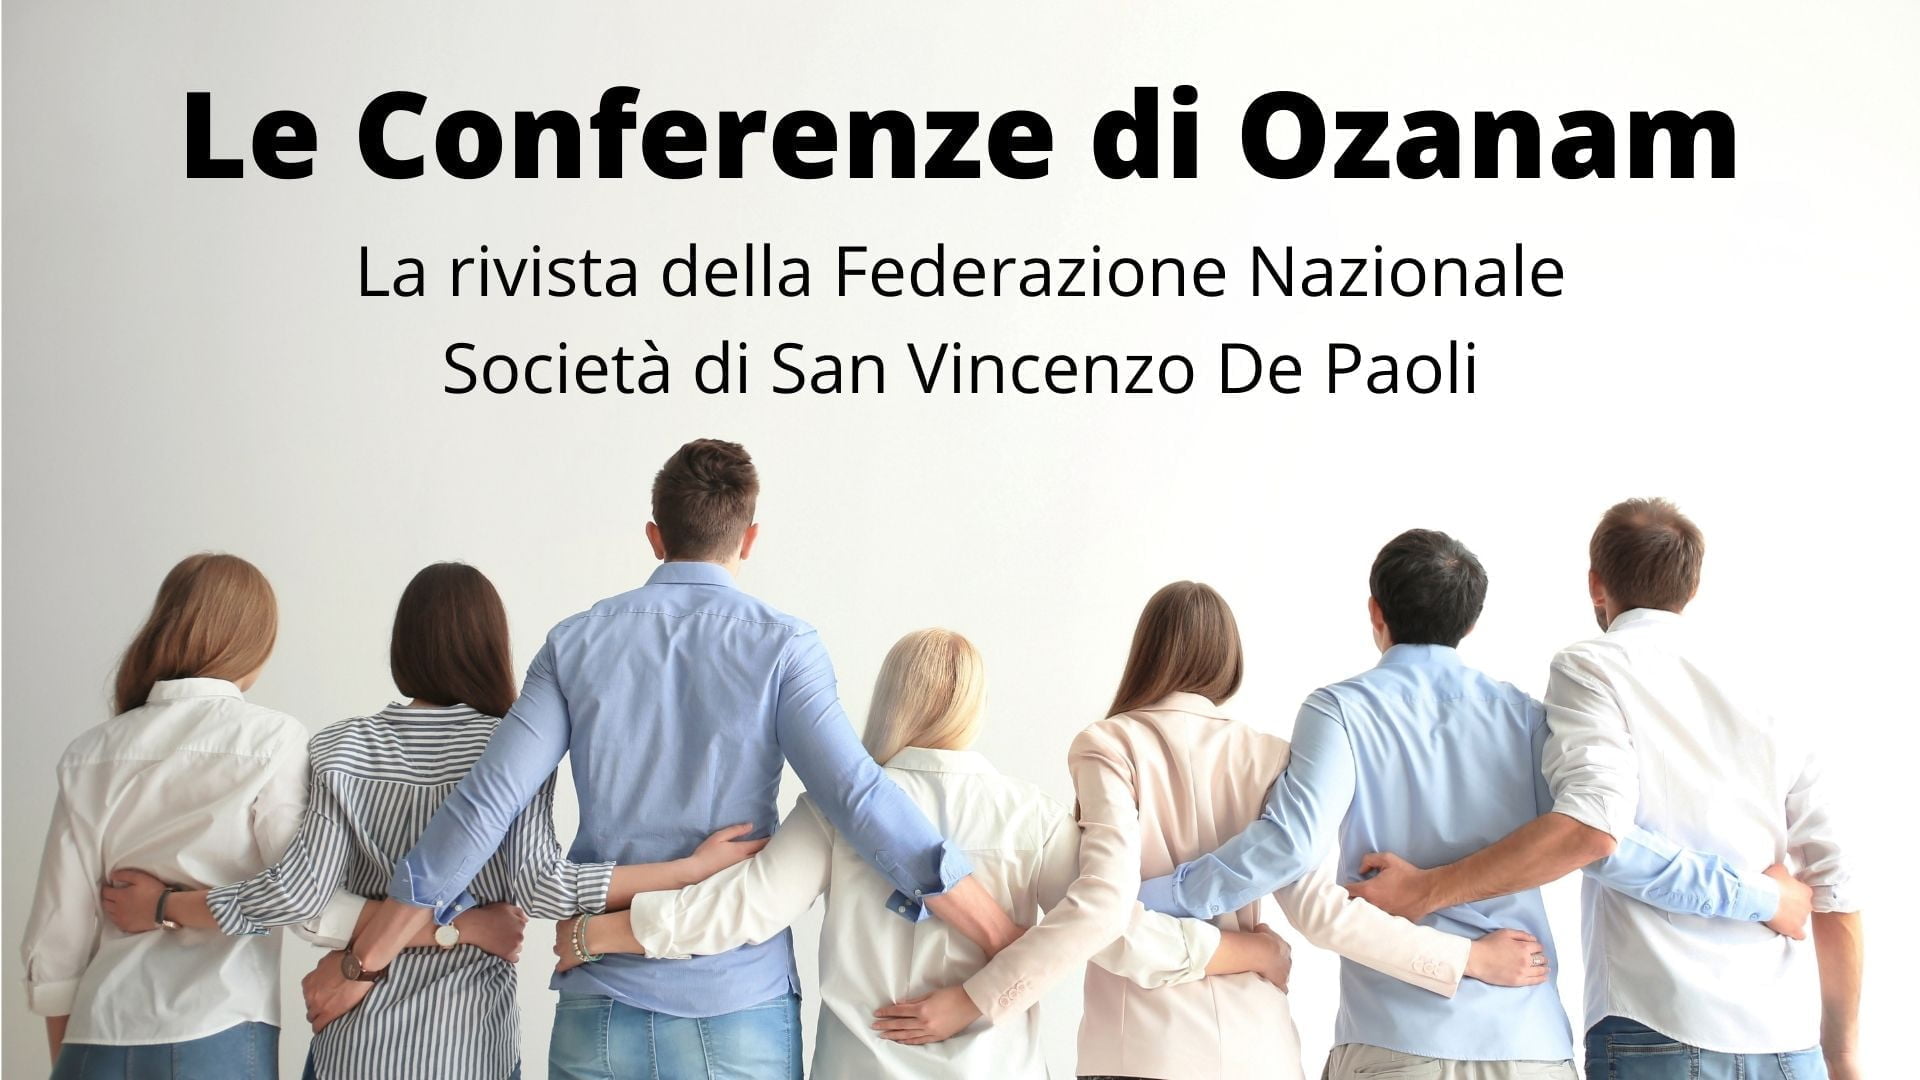 Le Conferenze di Ozanam, la rivista ufficiale della Federazione Nazionale Società di San Vincenzo De Paoli